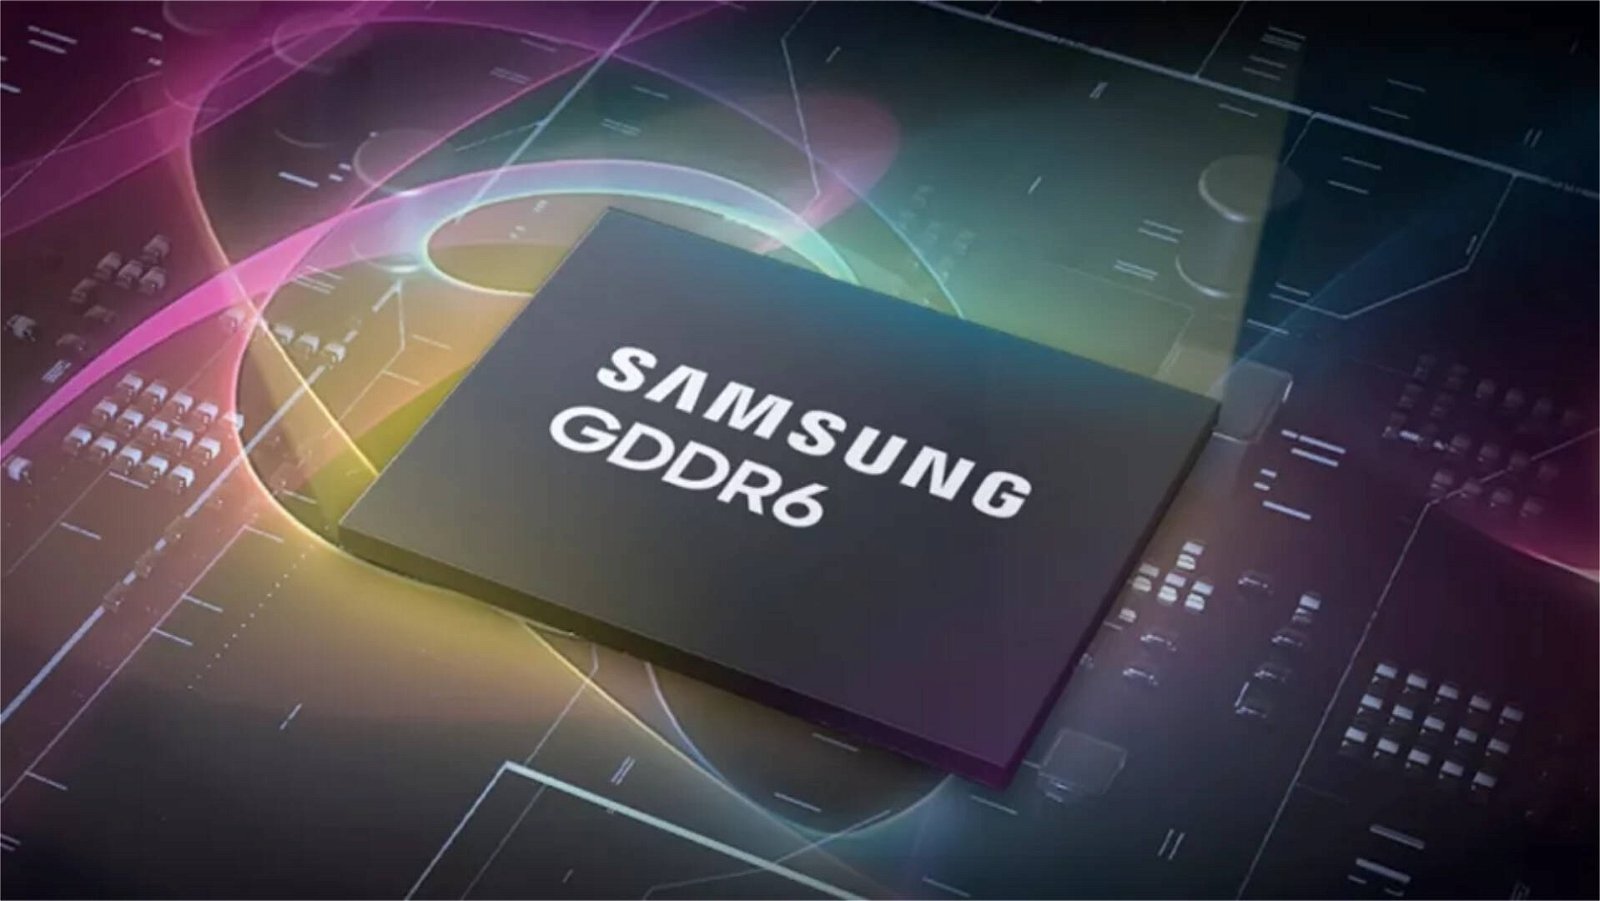 Immagine di Le nuove memorie GDDR6 da 24Gb/s di Samsung sono già pronte